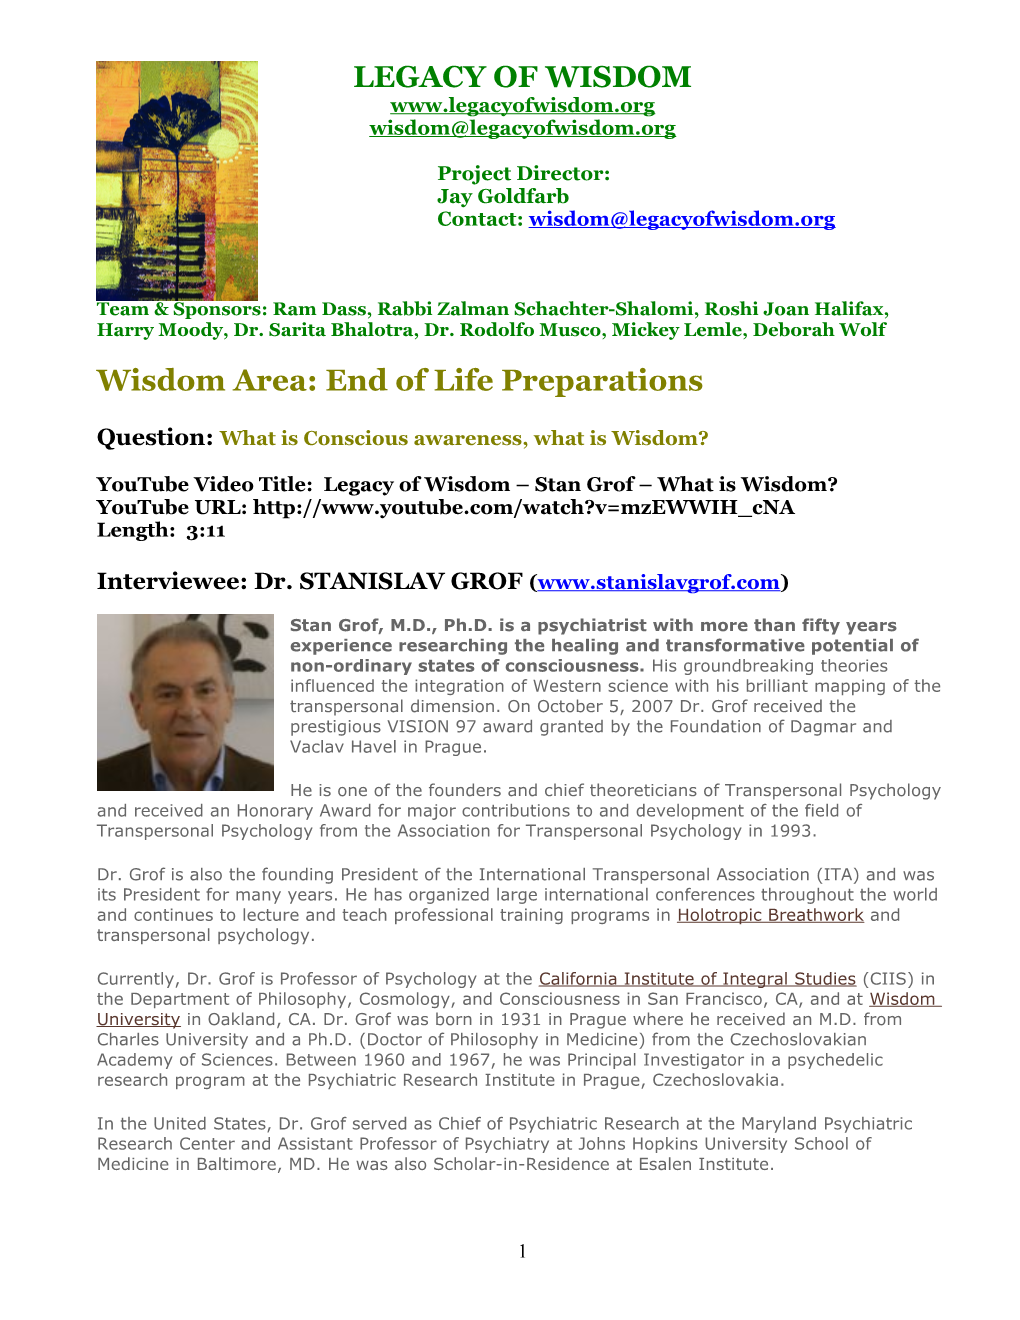 Wisdom Area: Mission and Fulfillment s2